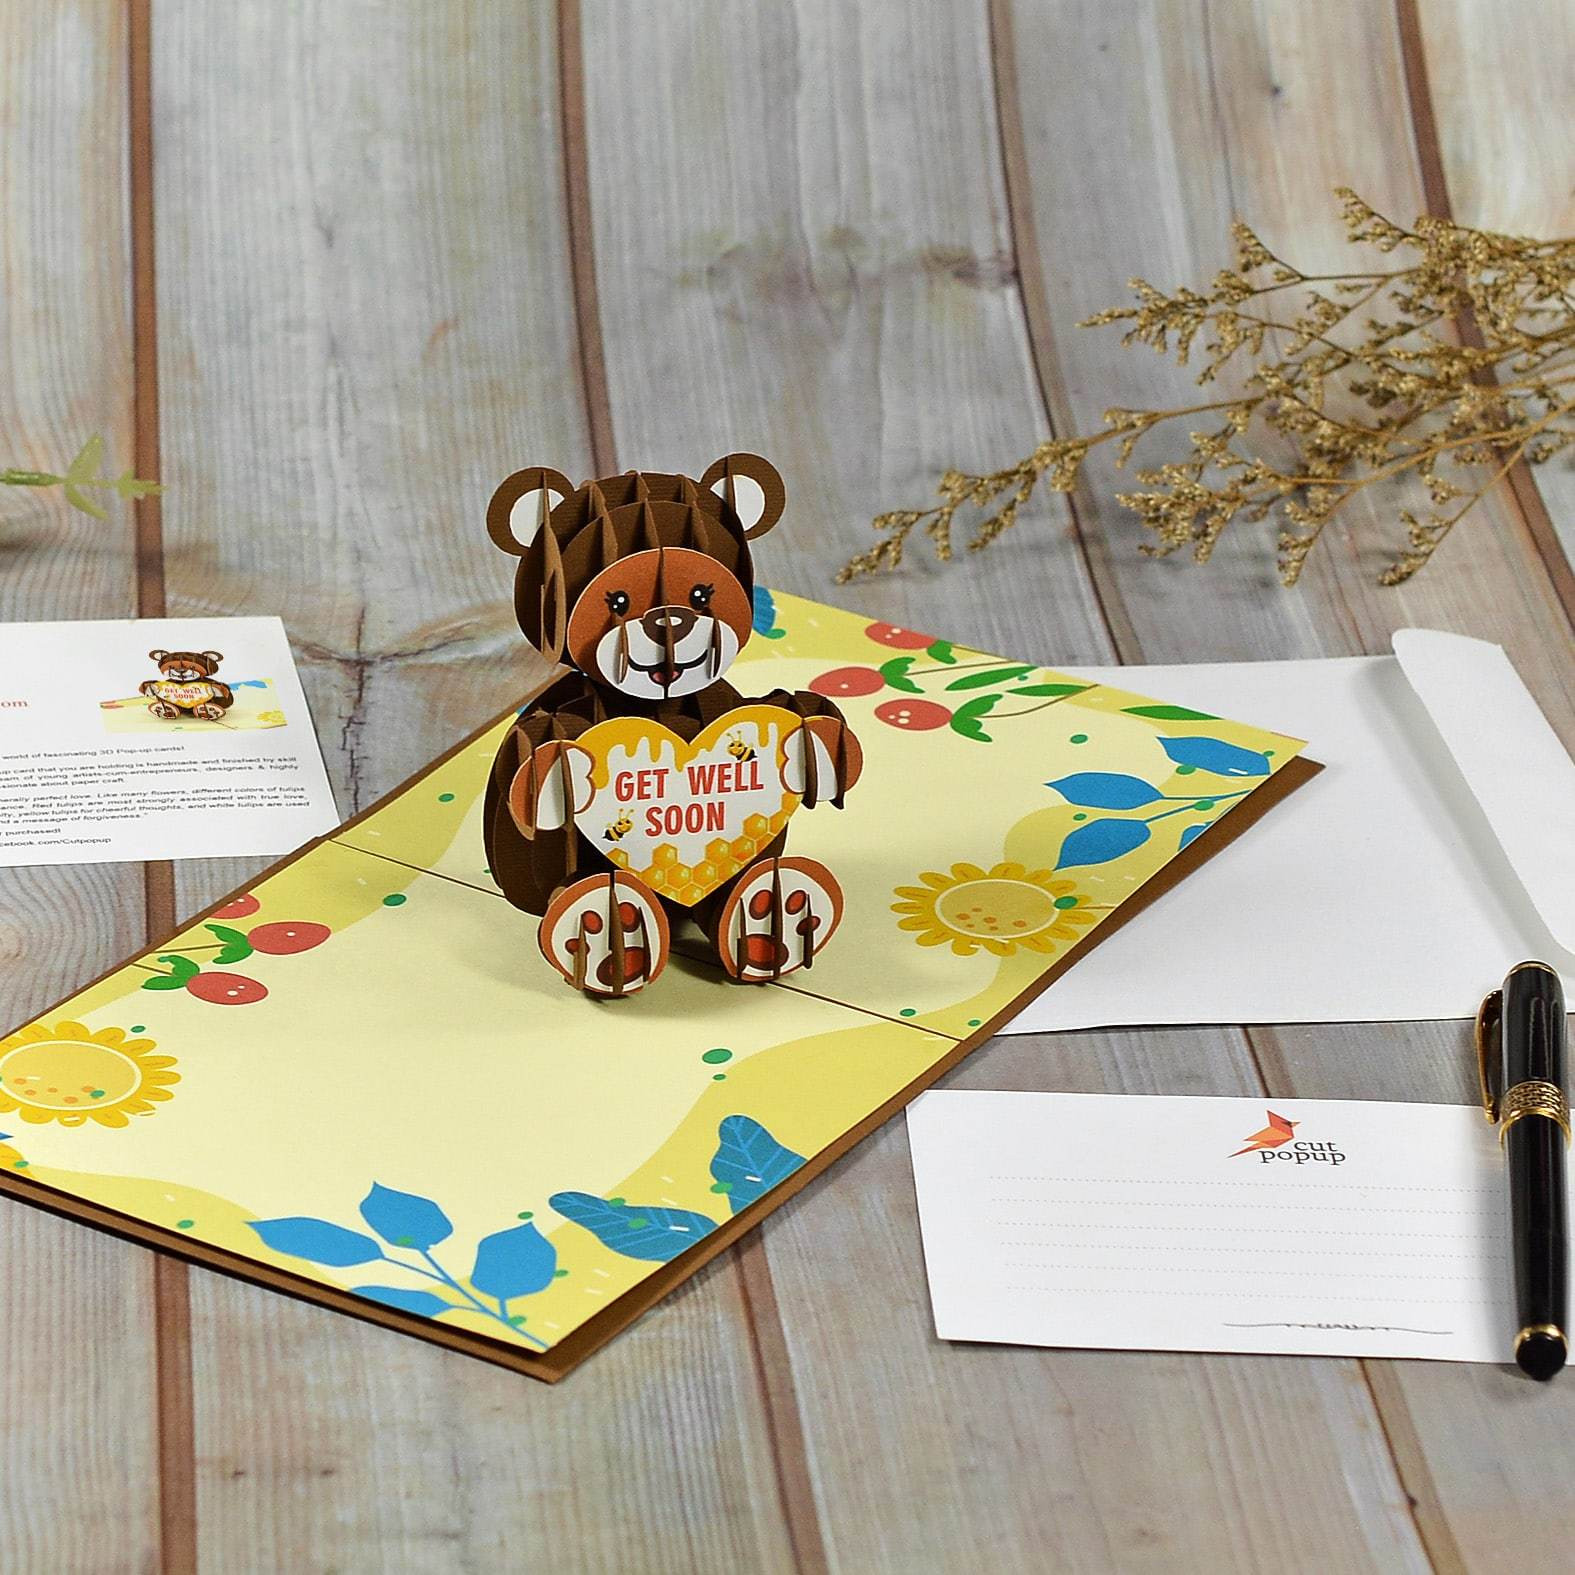 Teddy Bear 3D Cool Pop Up Card